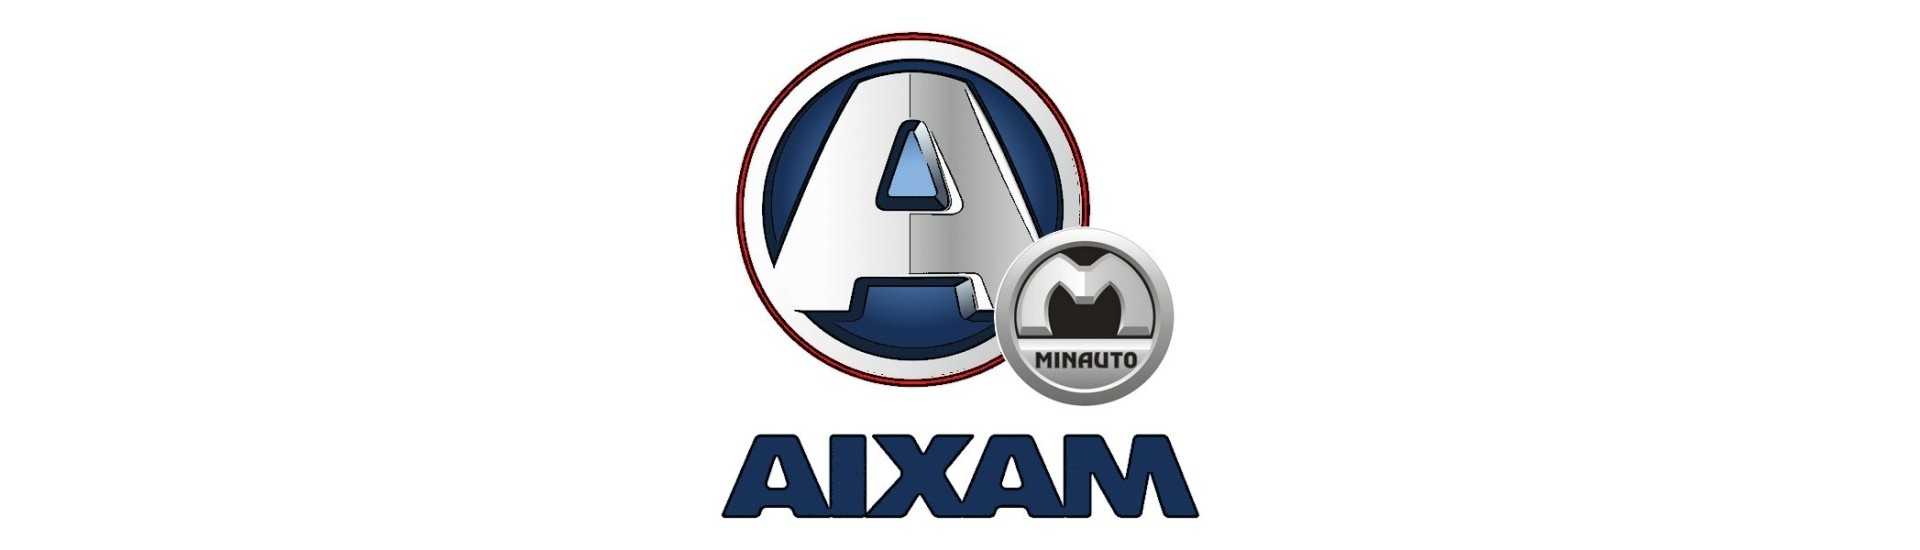 Kit de manutenção aos melhores preços do carro sem autorização Aixam Minauto